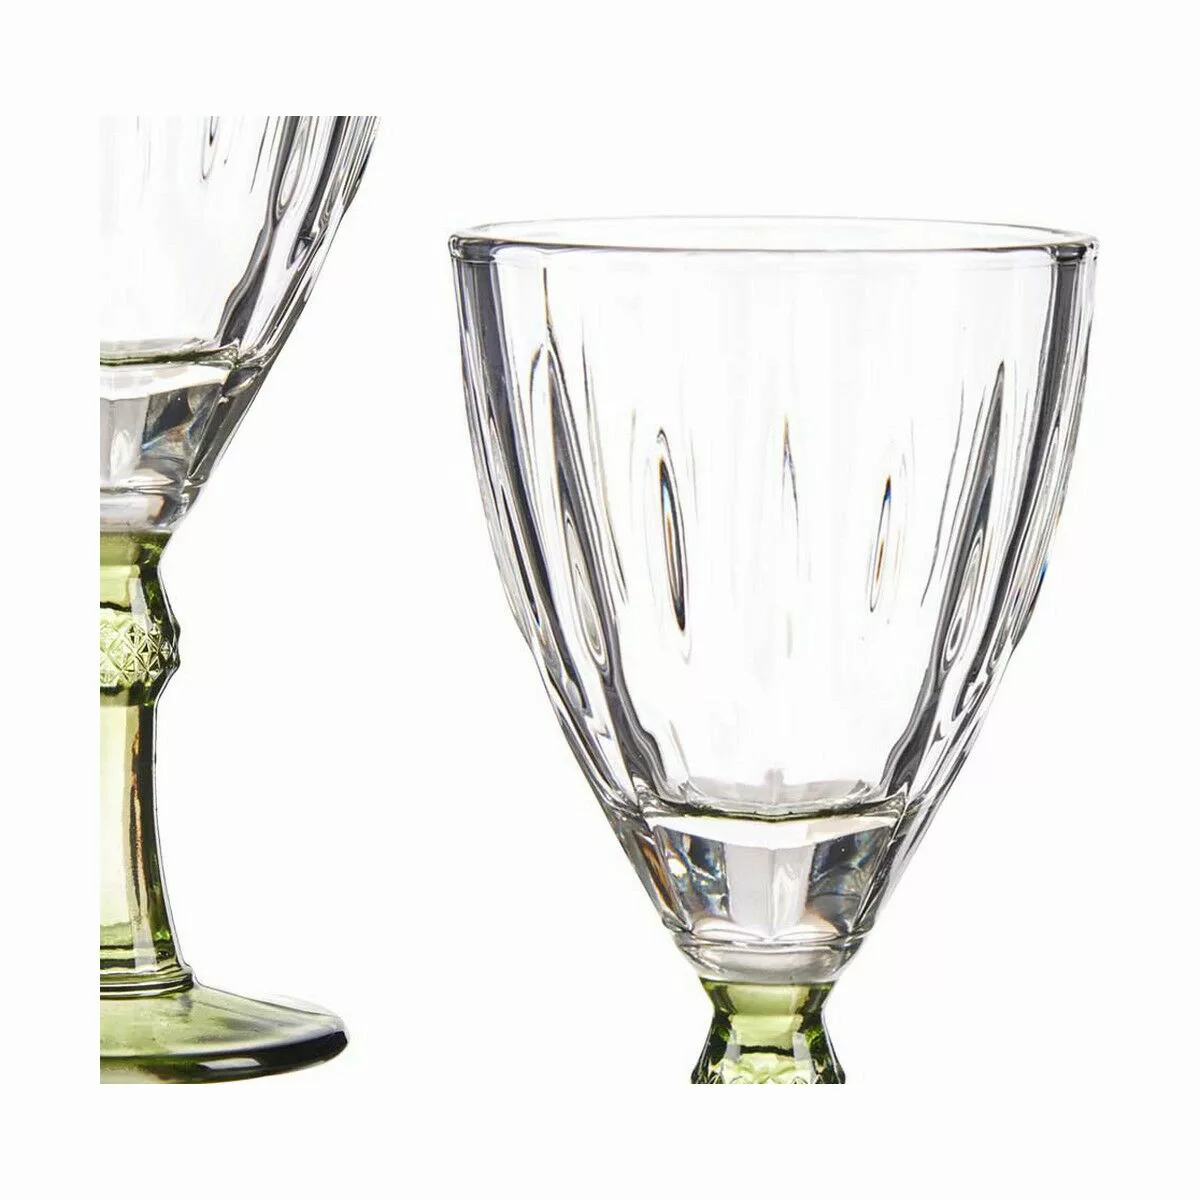 Weinglas Exotic Kristall Grün 6 Stück (275 Ml) günstig online kaufen